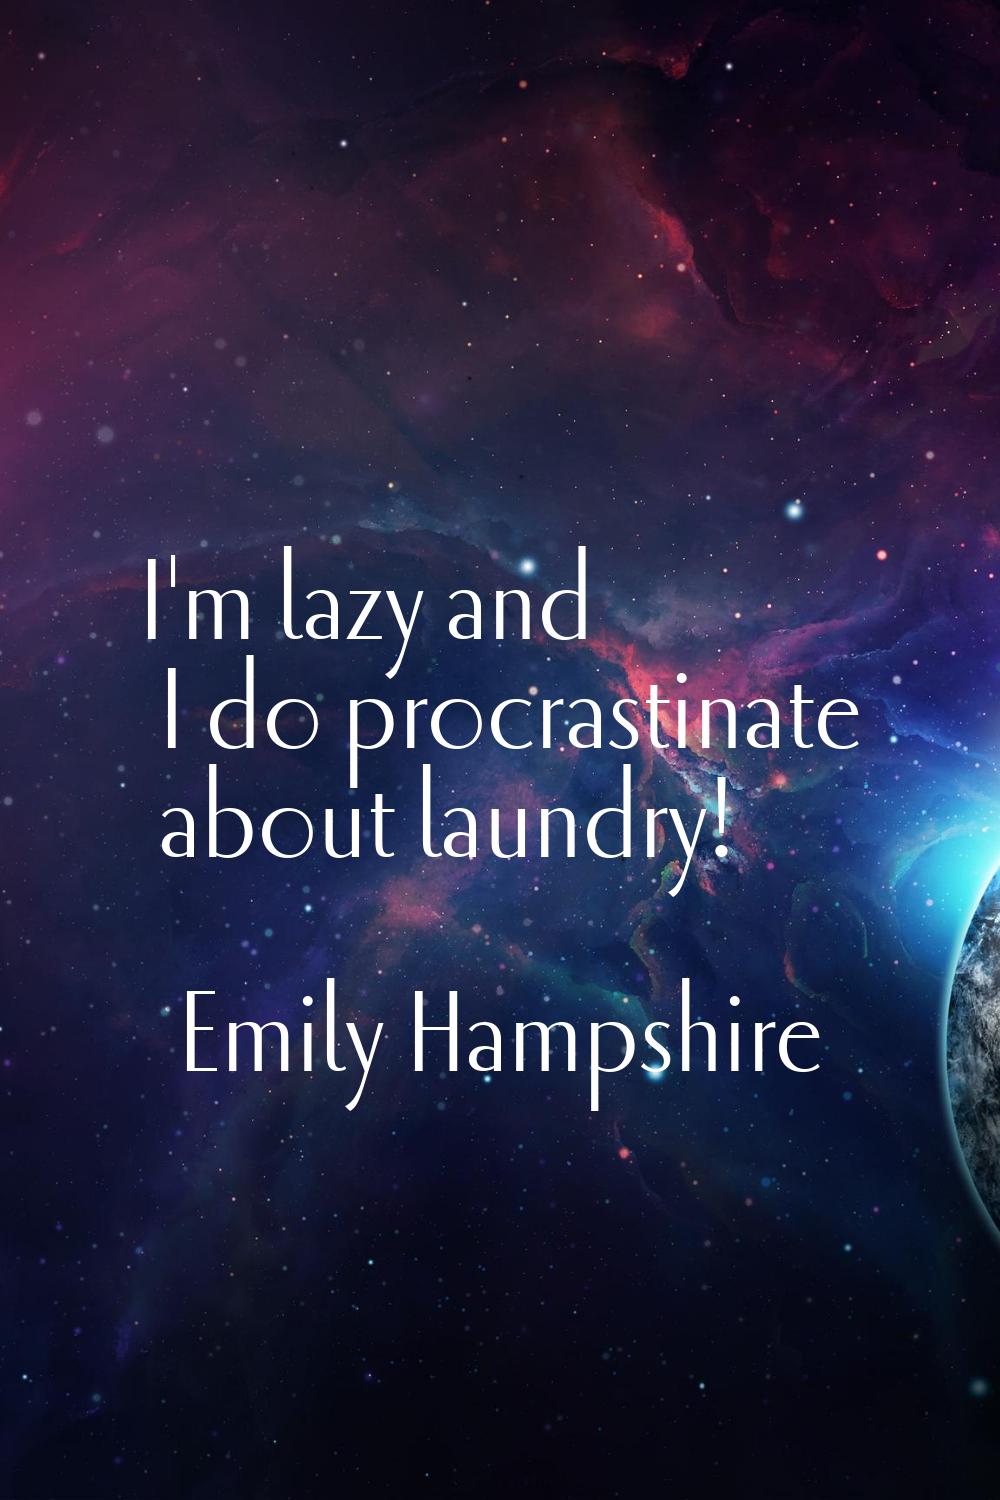 I'm lazy and I do procrastinate about laundry!